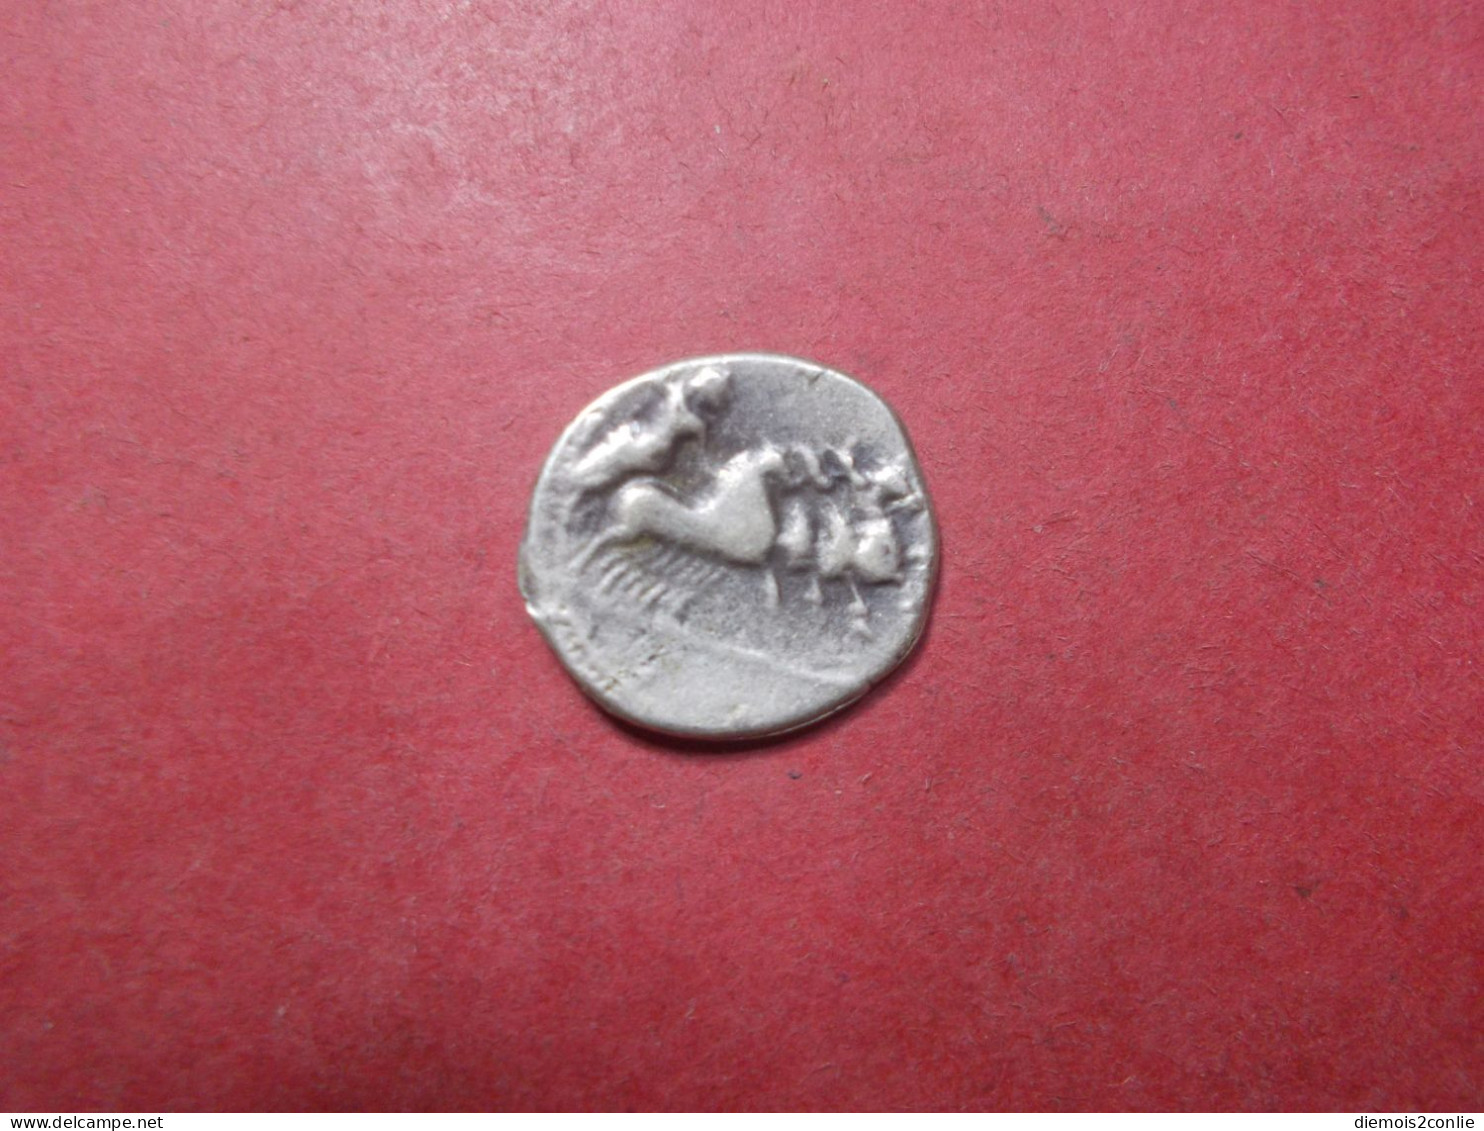 REPLIQUE COPIE Pièce Monnaie Denier Republique Romaine à Définir (P13) - Röm. Republik (-280 / -27)